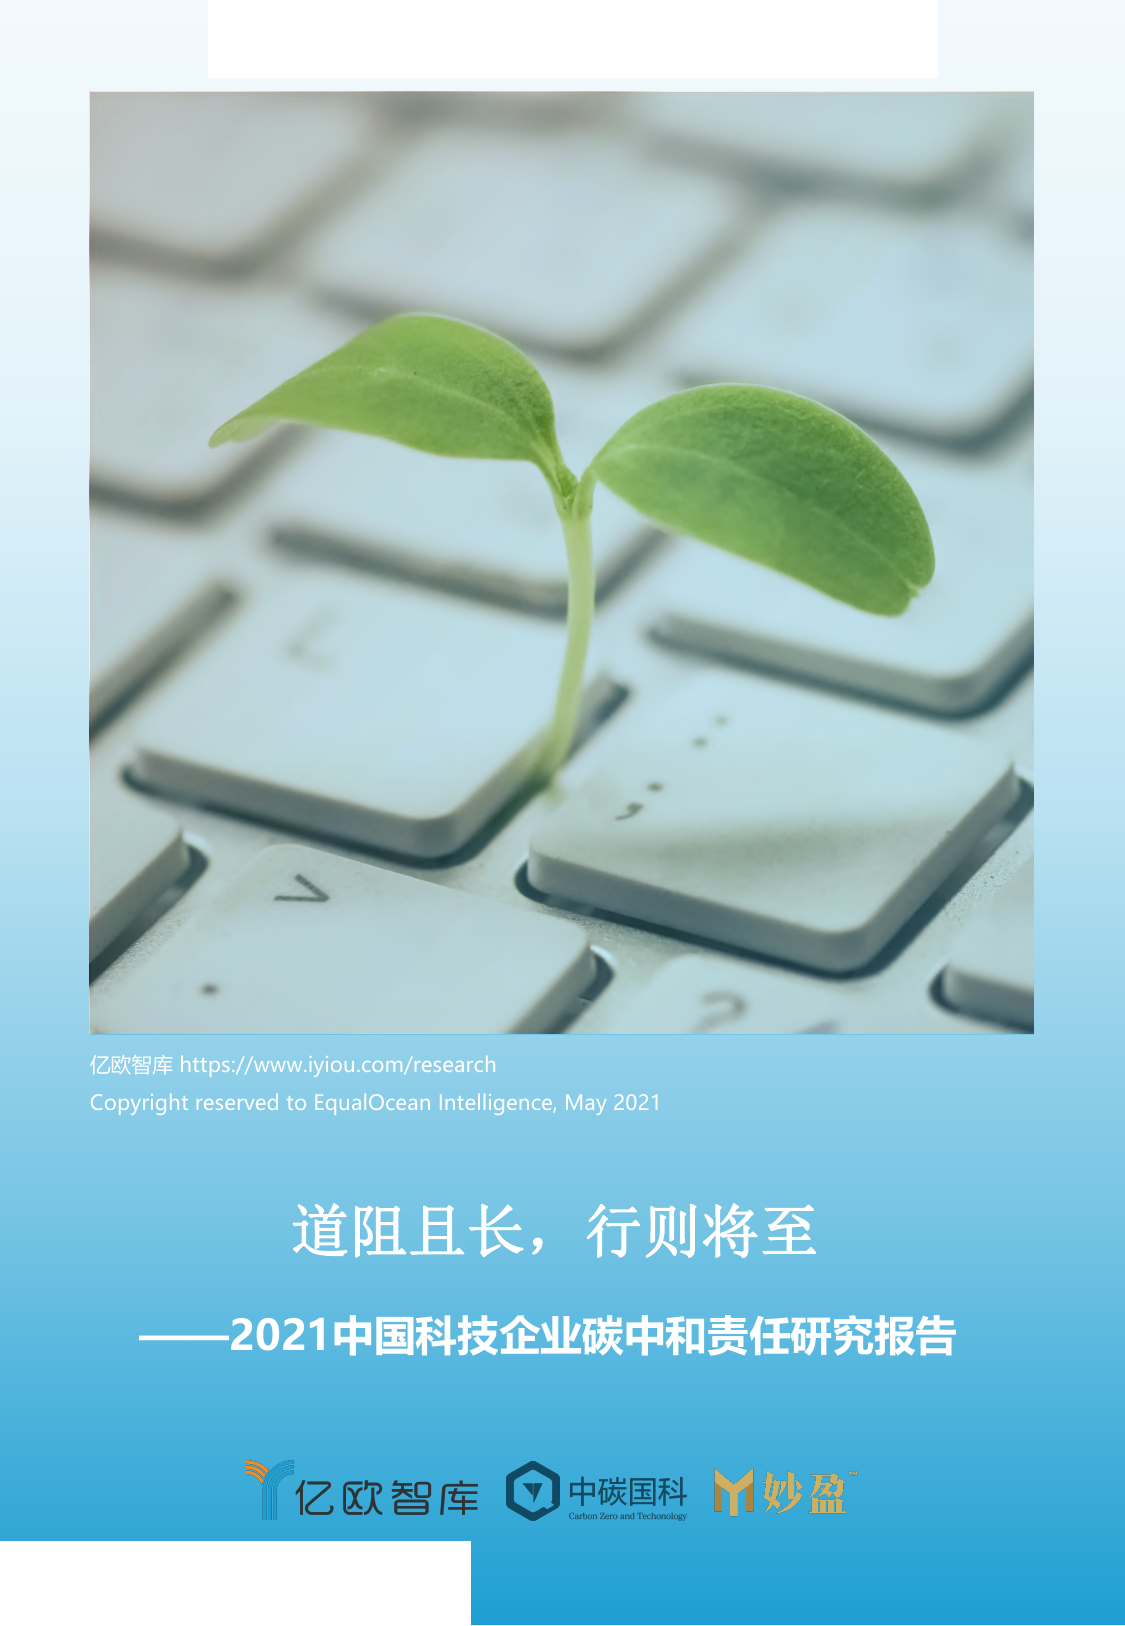 亿欧智库--科技行业2021中国科技企业碳中和责任研究报告：道阻且长，行则将至-2021-05-17